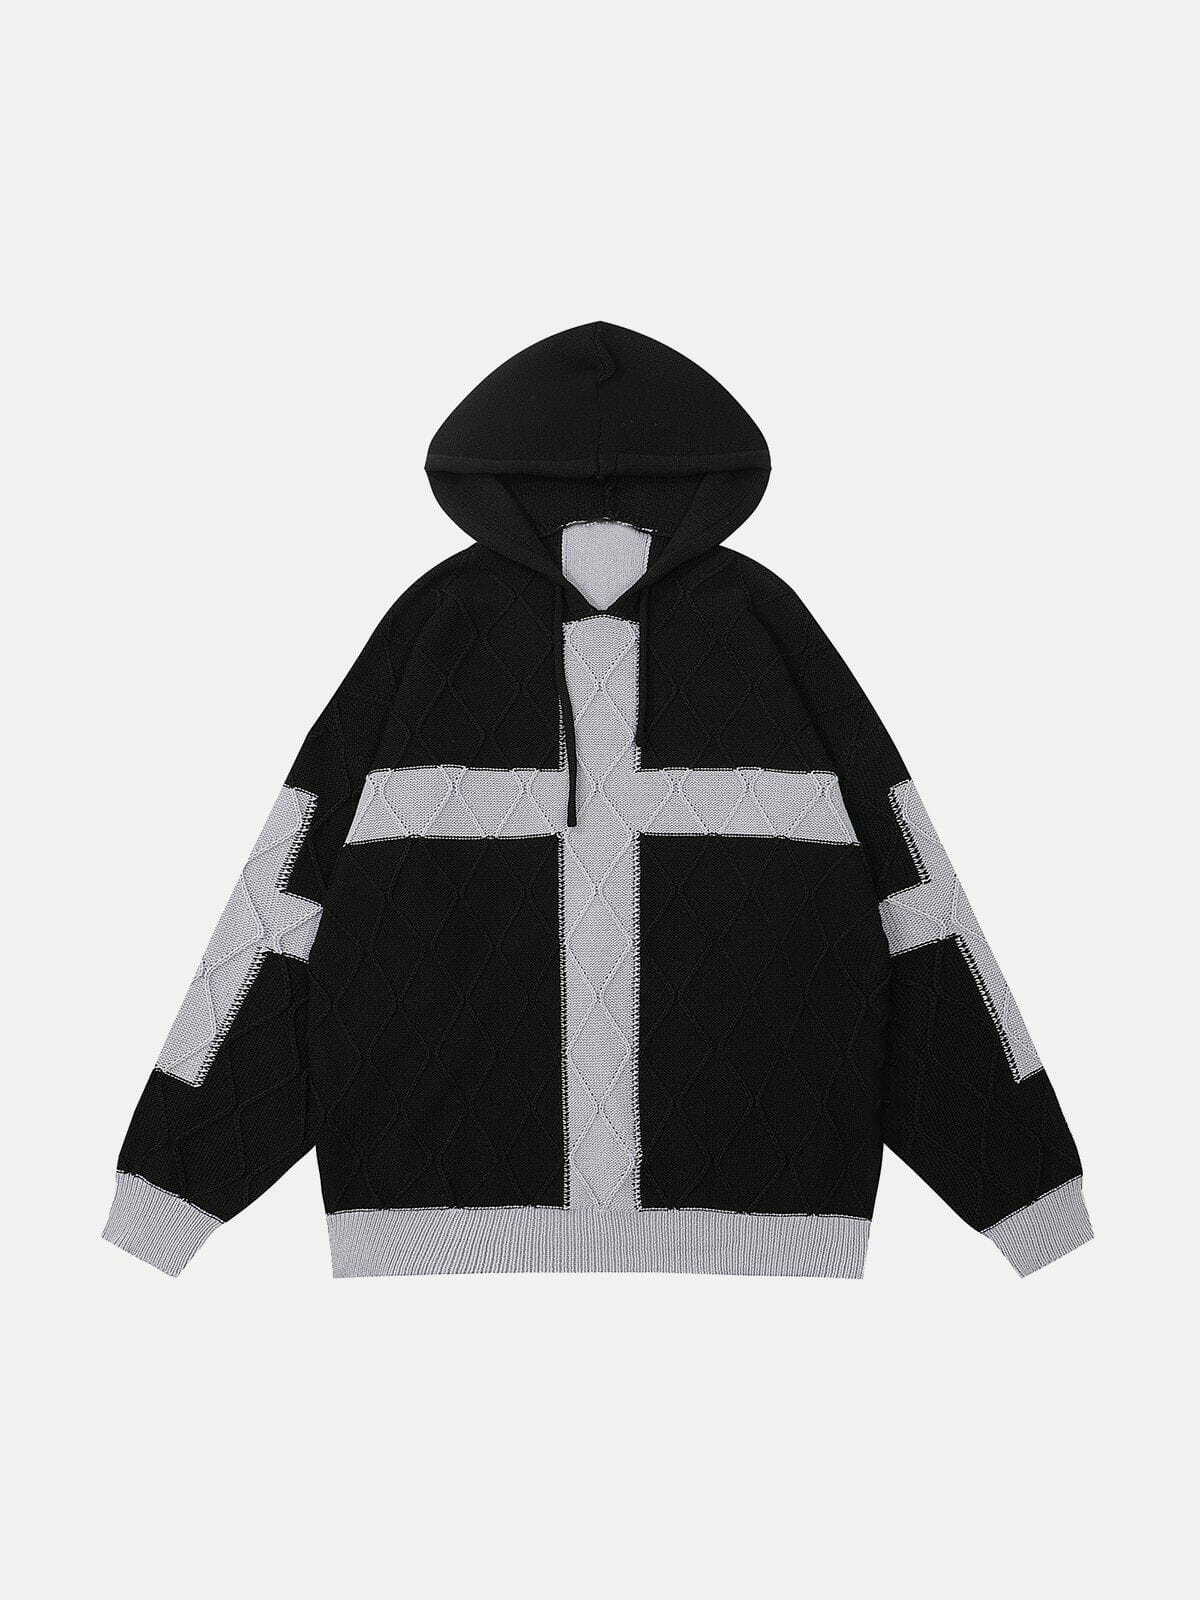 patchwork cross hoodie edgy & urban streetwear 7312